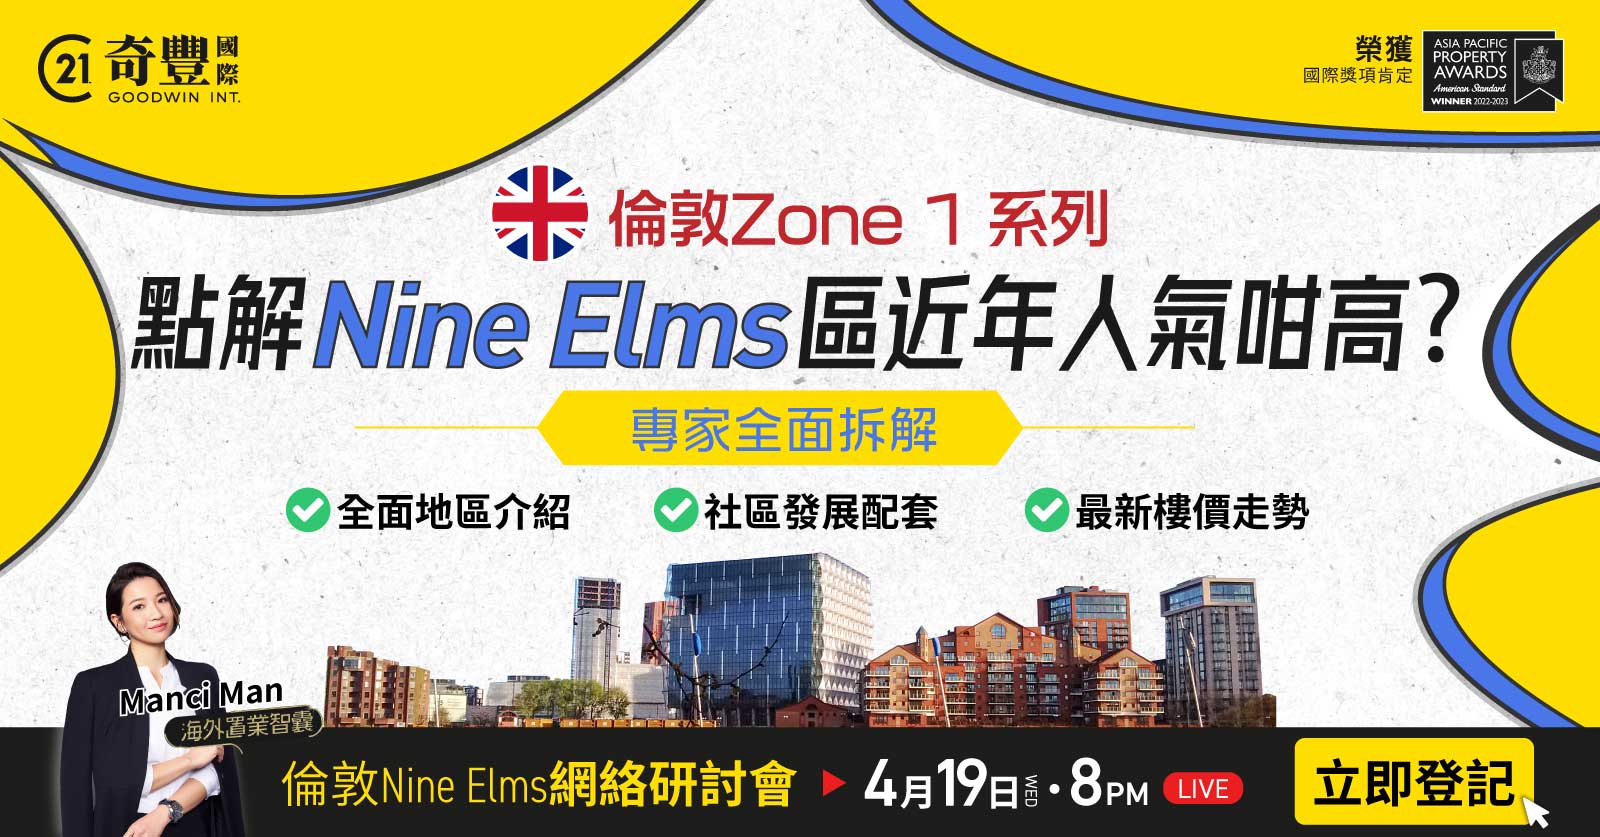 倫敦Nine Elms網絡研討會 - 點解近年 Nine Elms人氣咁高？